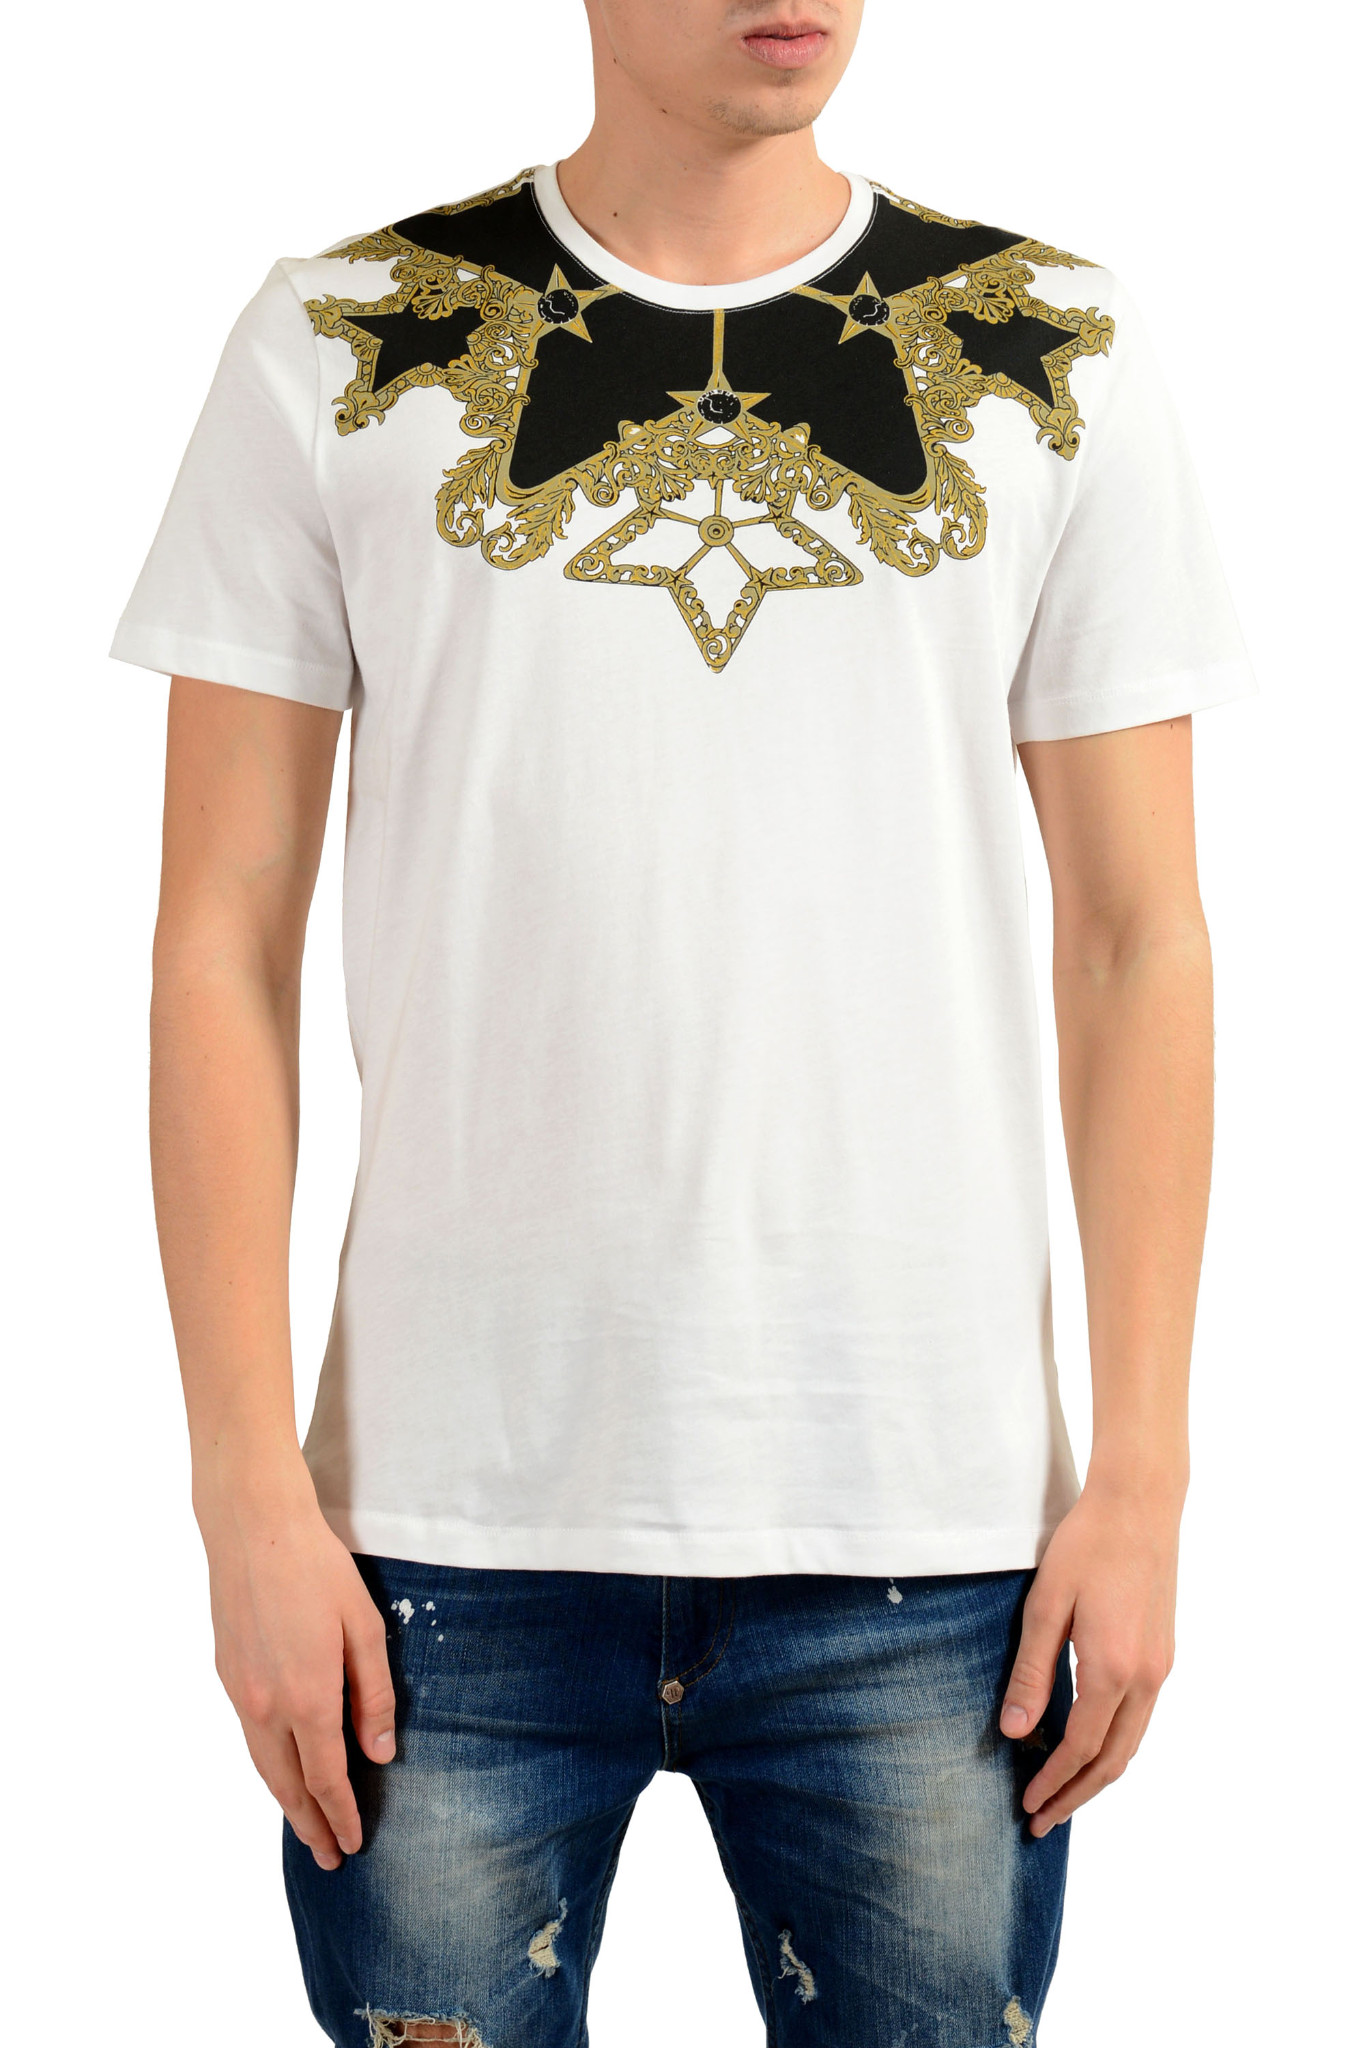 Versace Collection Mens Black Graphic Crewneck T-Shirt Sz US XL IT 54